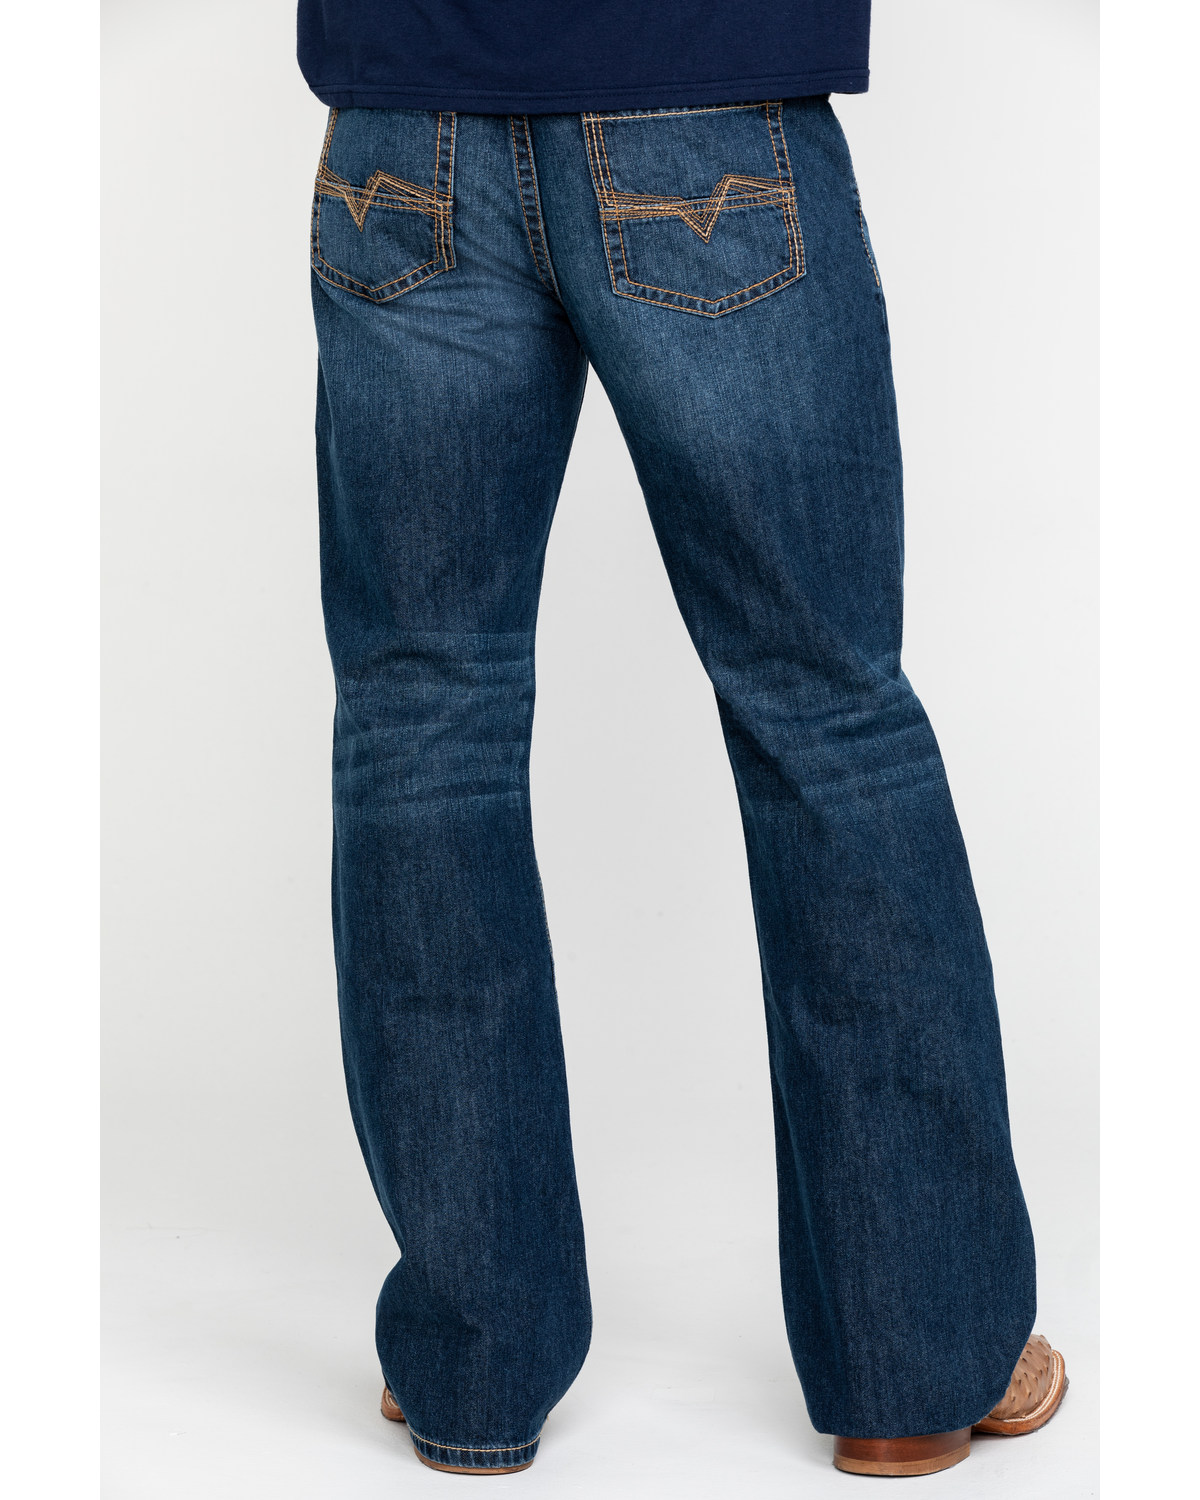 men in bootcut jeans